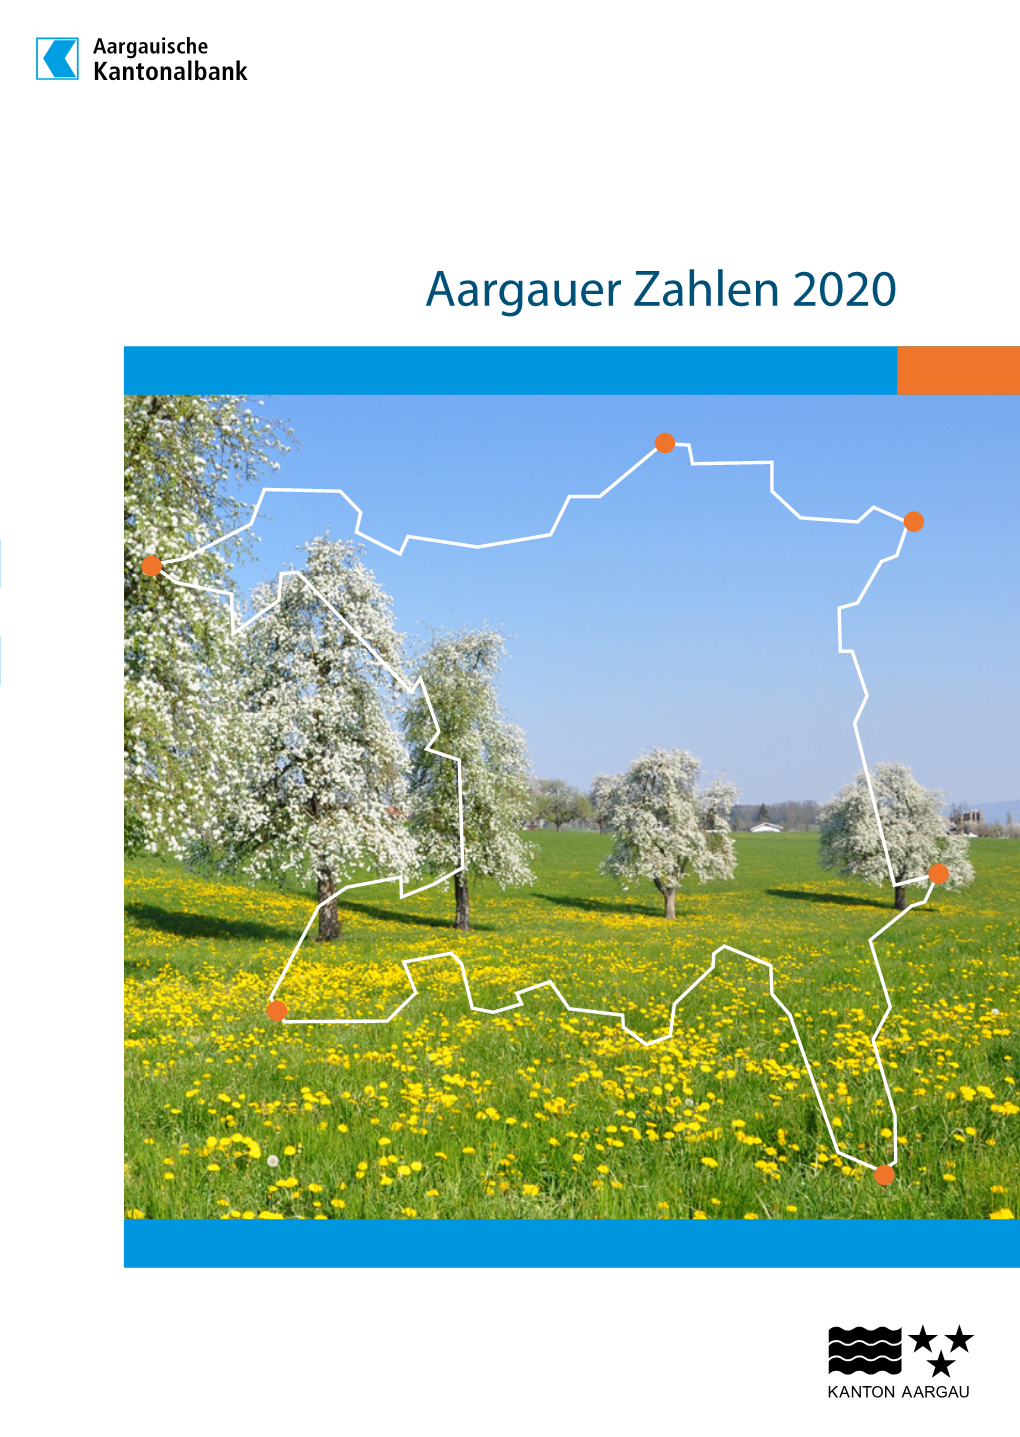 Aargauer Zahlen 2020 2 | Aargauer Zahlen 2020